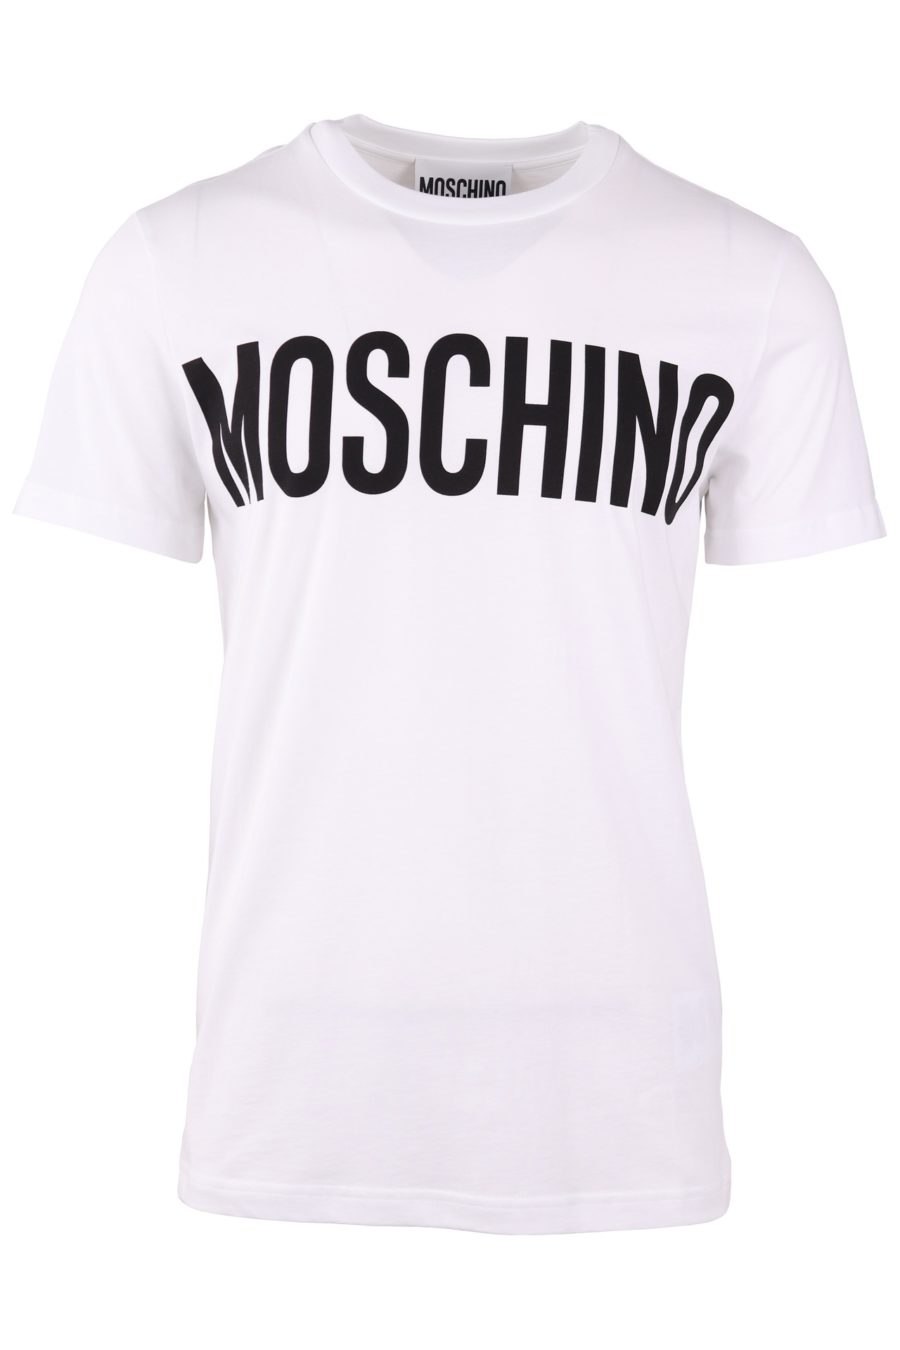 Camiseta Moschino Couture blanca con logo delantero negro - 957deafc0a212be66e2bc0c8fbf9e092f5147864